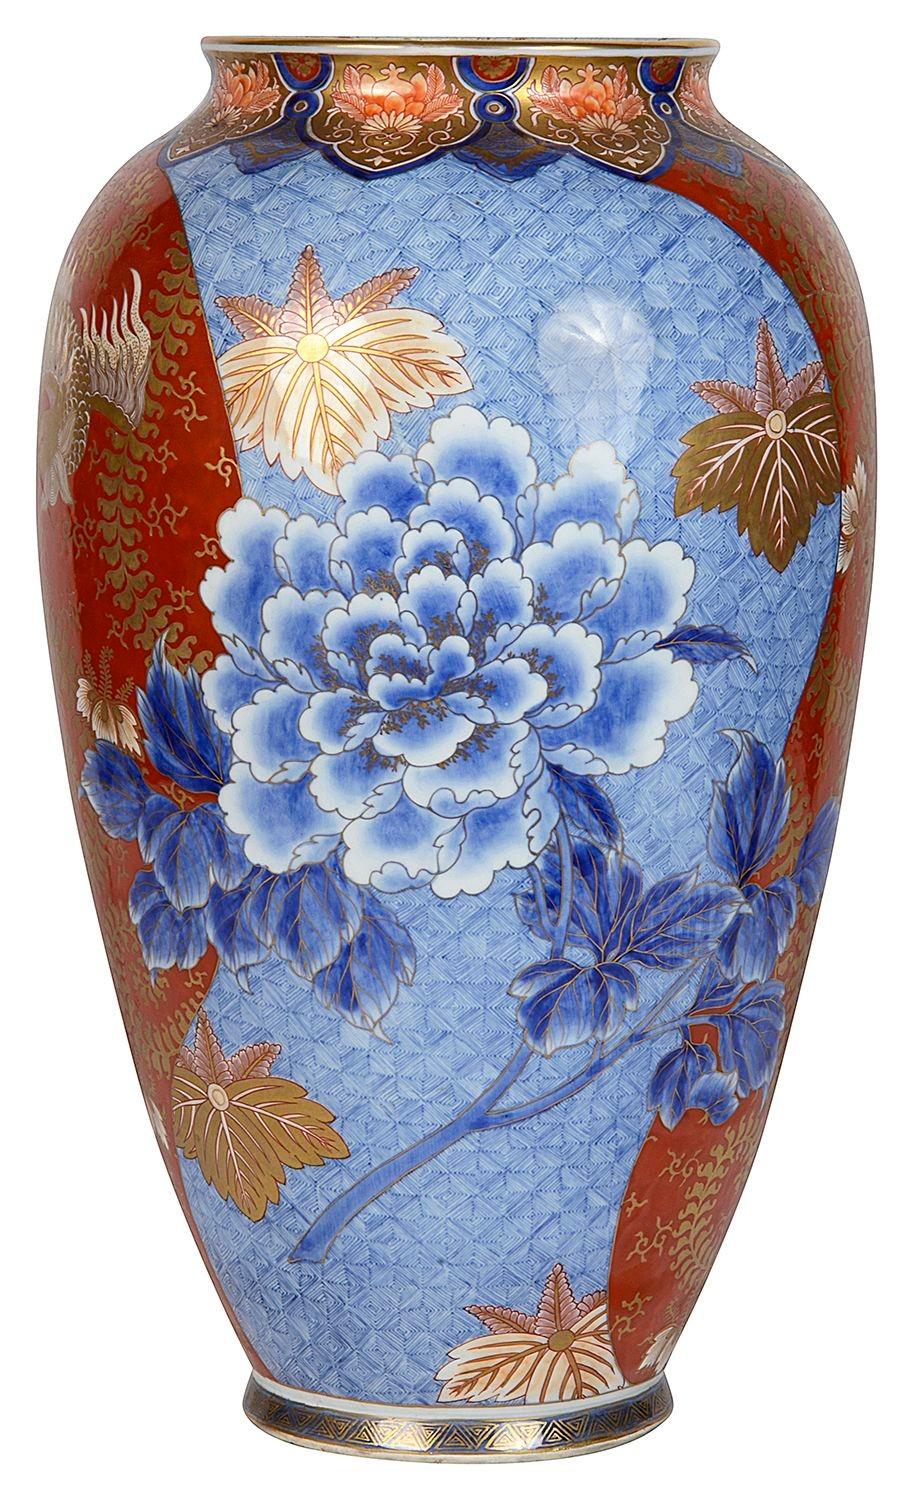 Magnifique vase en porcelaine de Fukagawa de la période Meiji (1868-1912). Décoration de motifs classiques, sections de fond rouge et bleu avec des fleurs exotiques.
Nous pouvons la convertir en lampe si nécessaire.
Signé à la base.

Lot 74